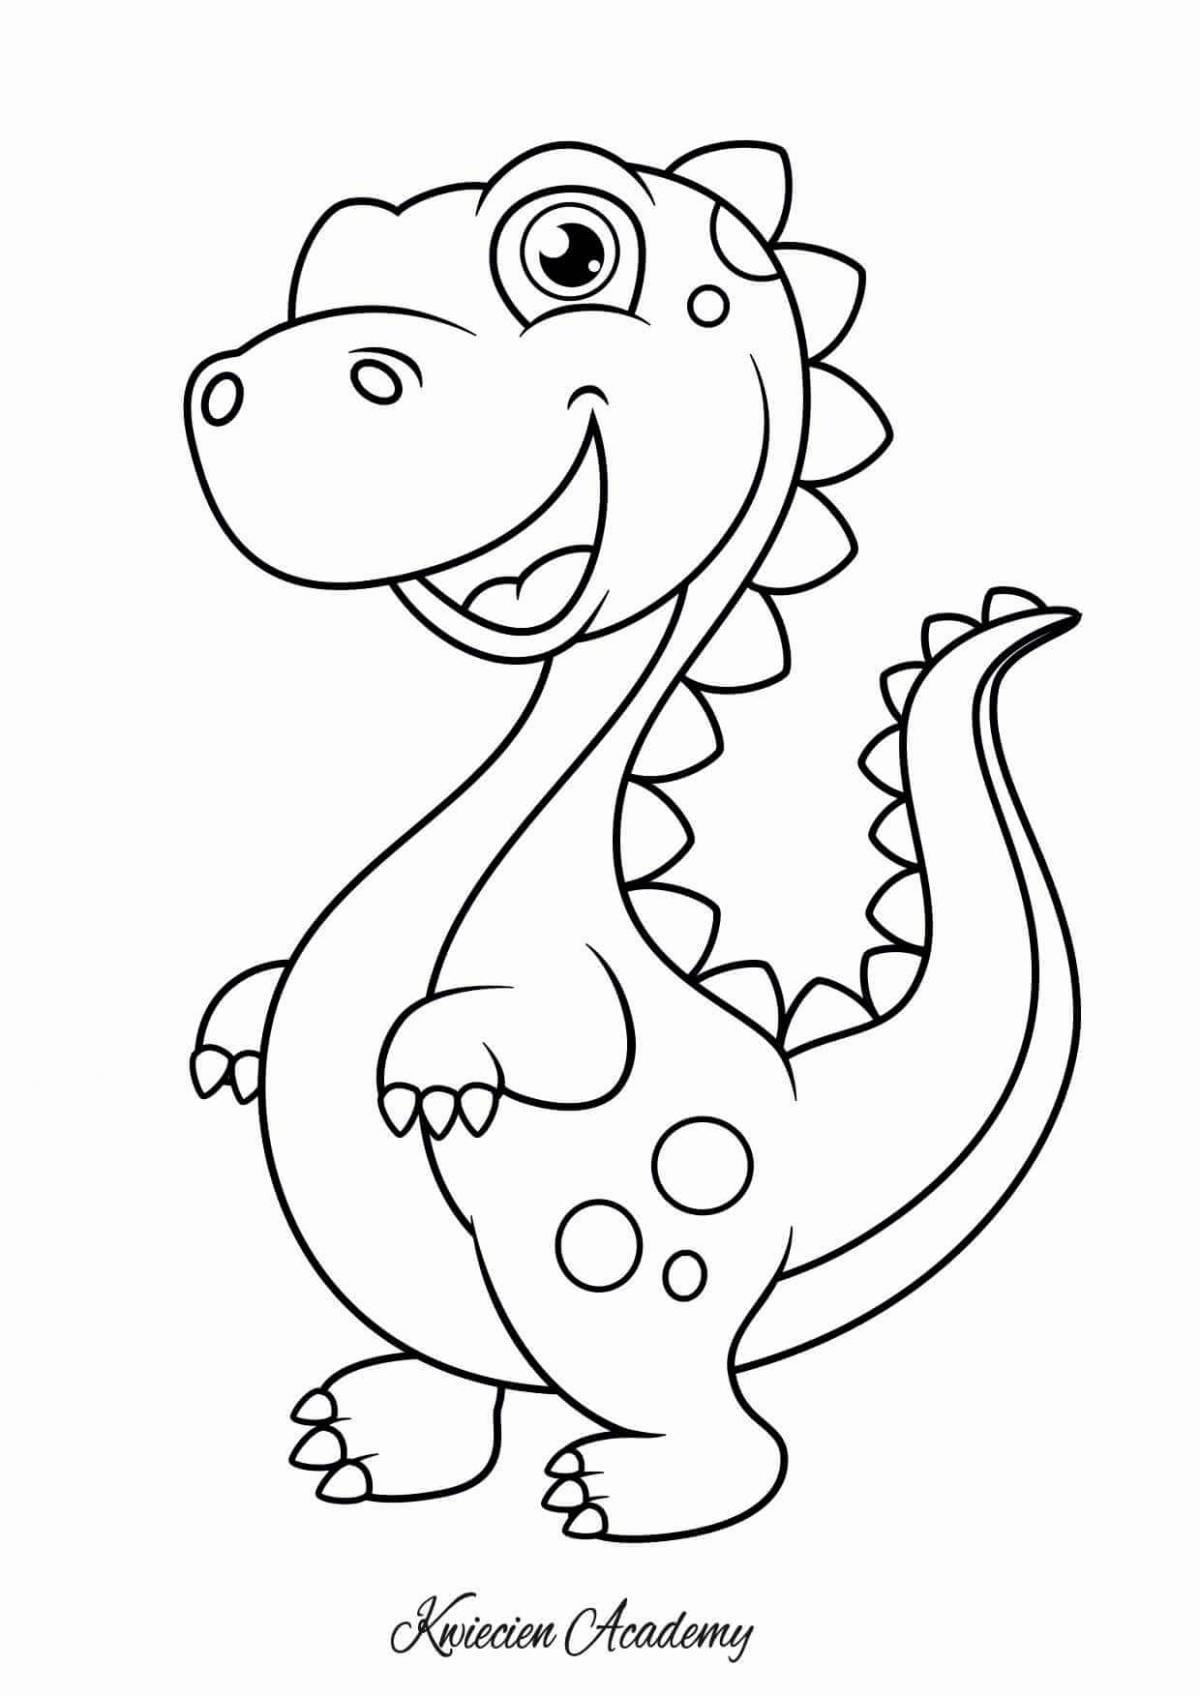 Выдающаяся страница раскраски динозавров для детей